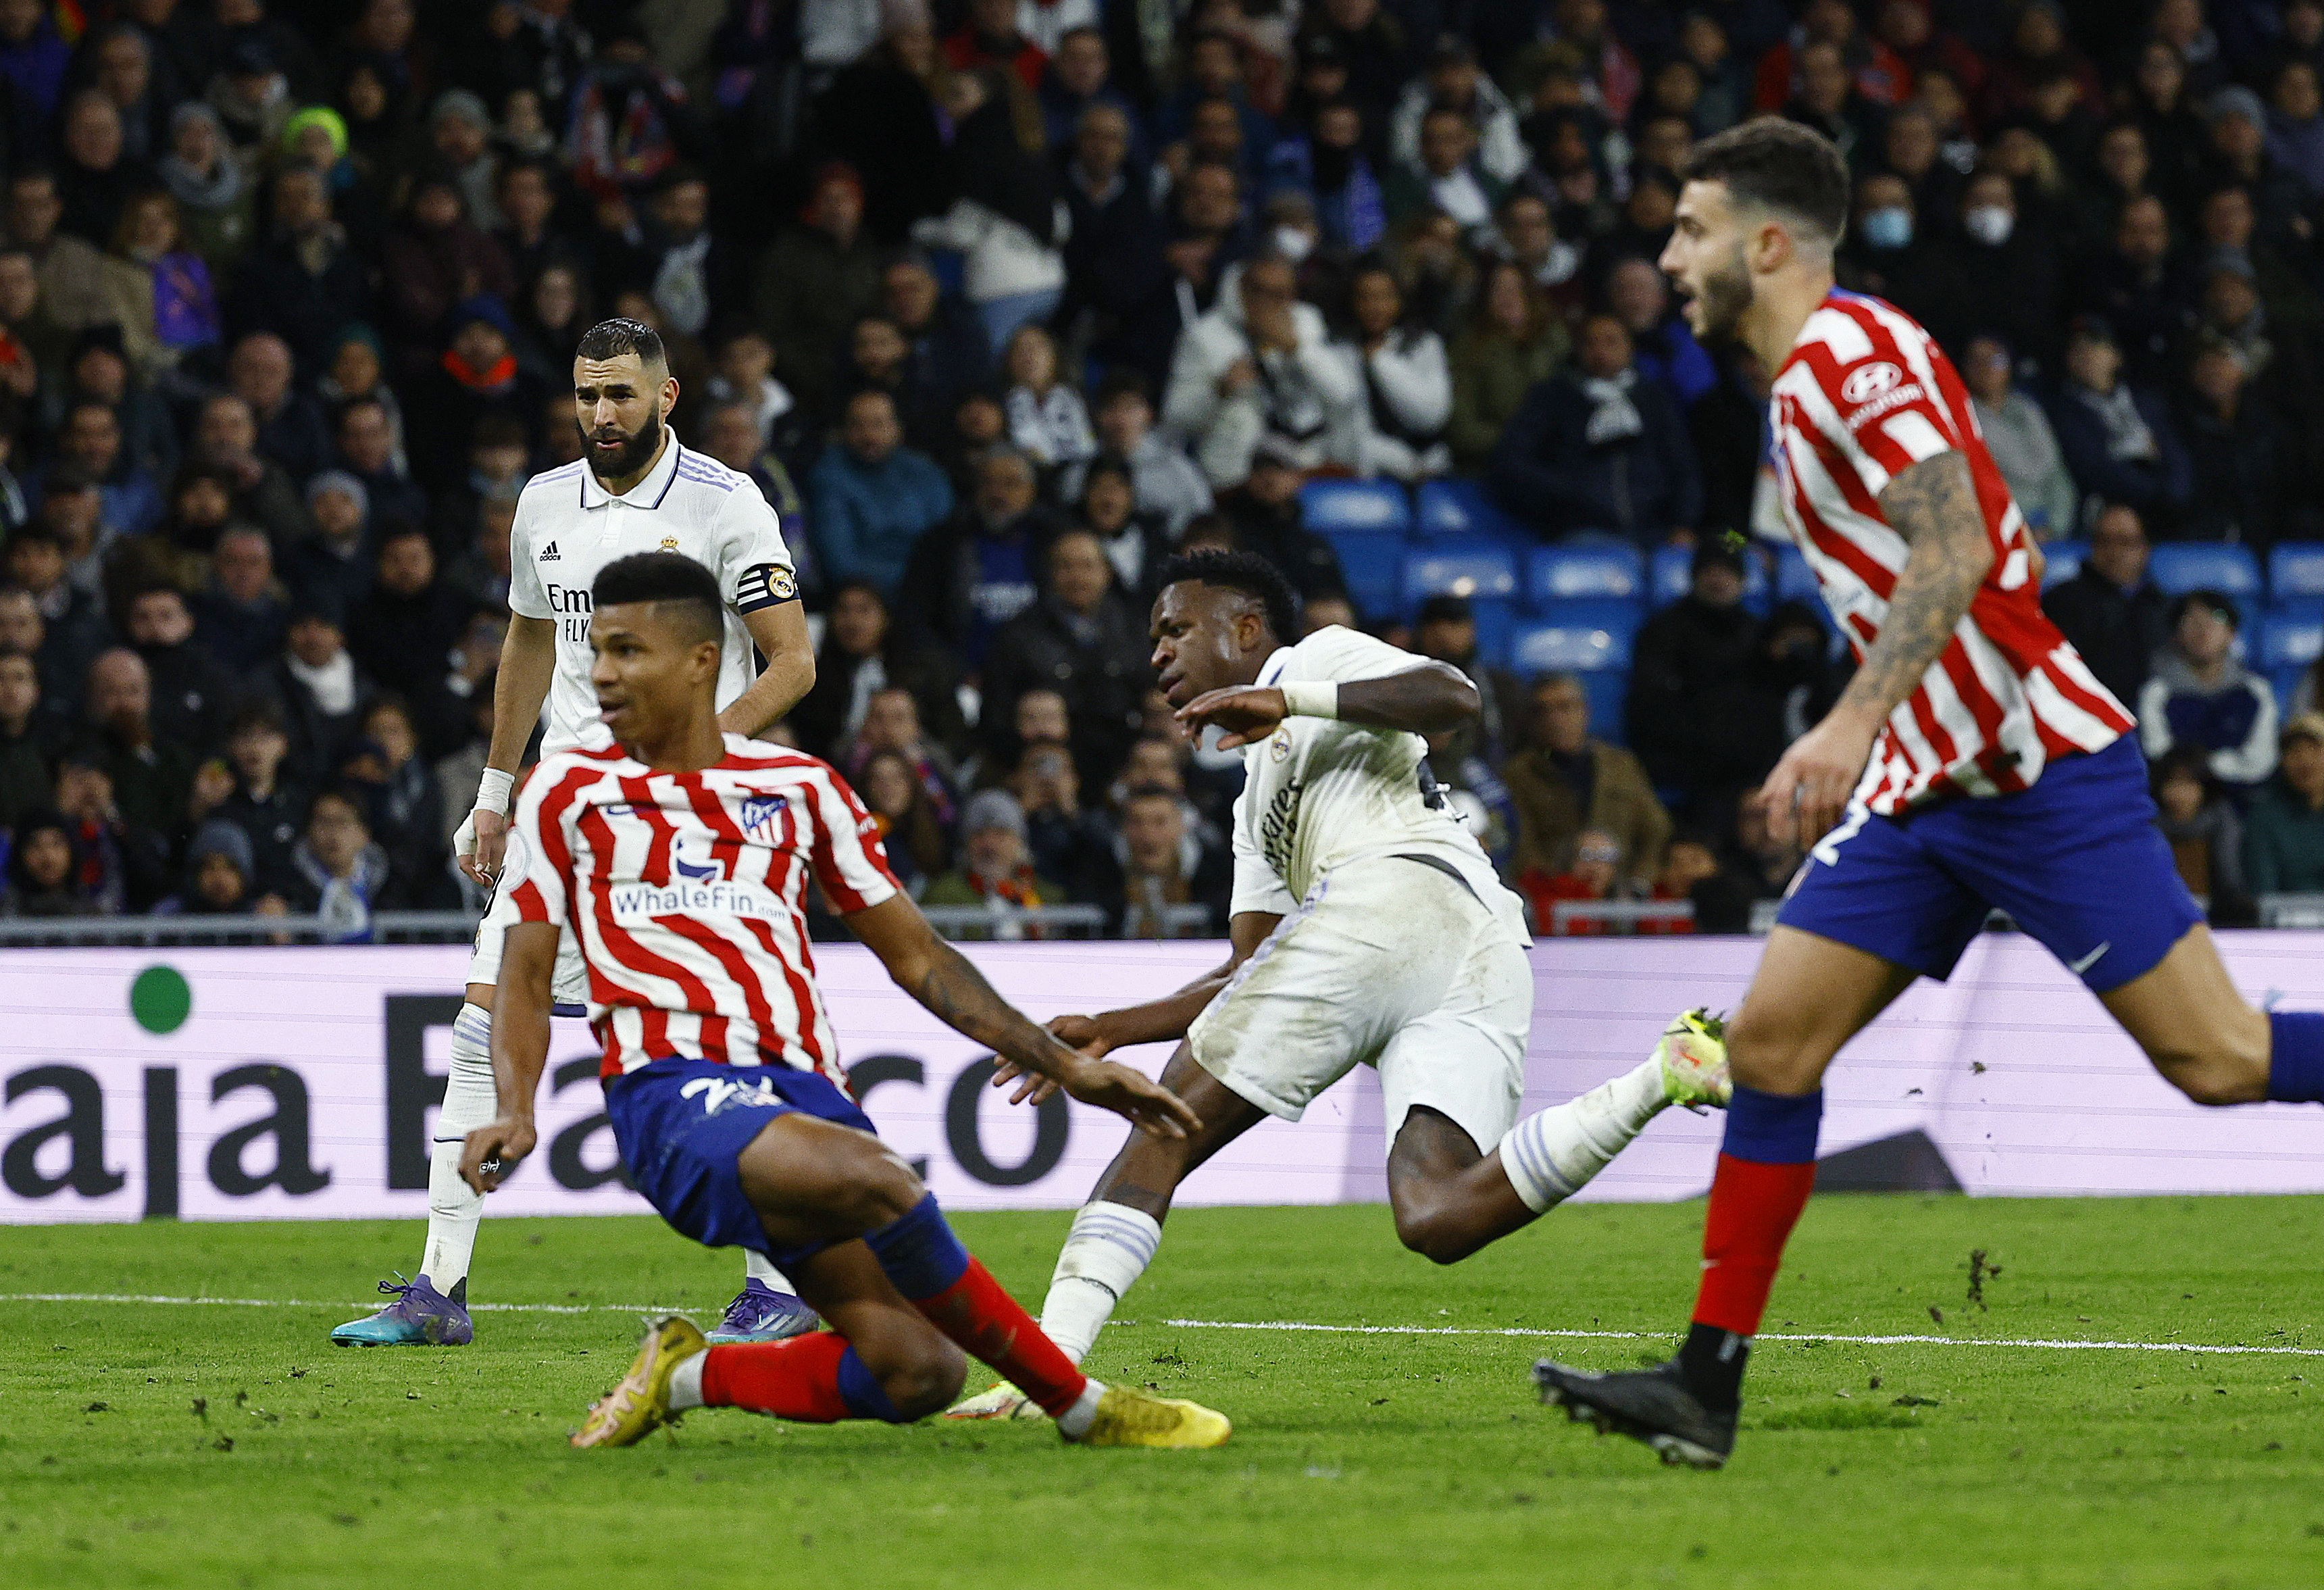 Real Madrid vs Atlético de Madrid, el partido más esperado de la jornada (REUTERS/Susana Vera)